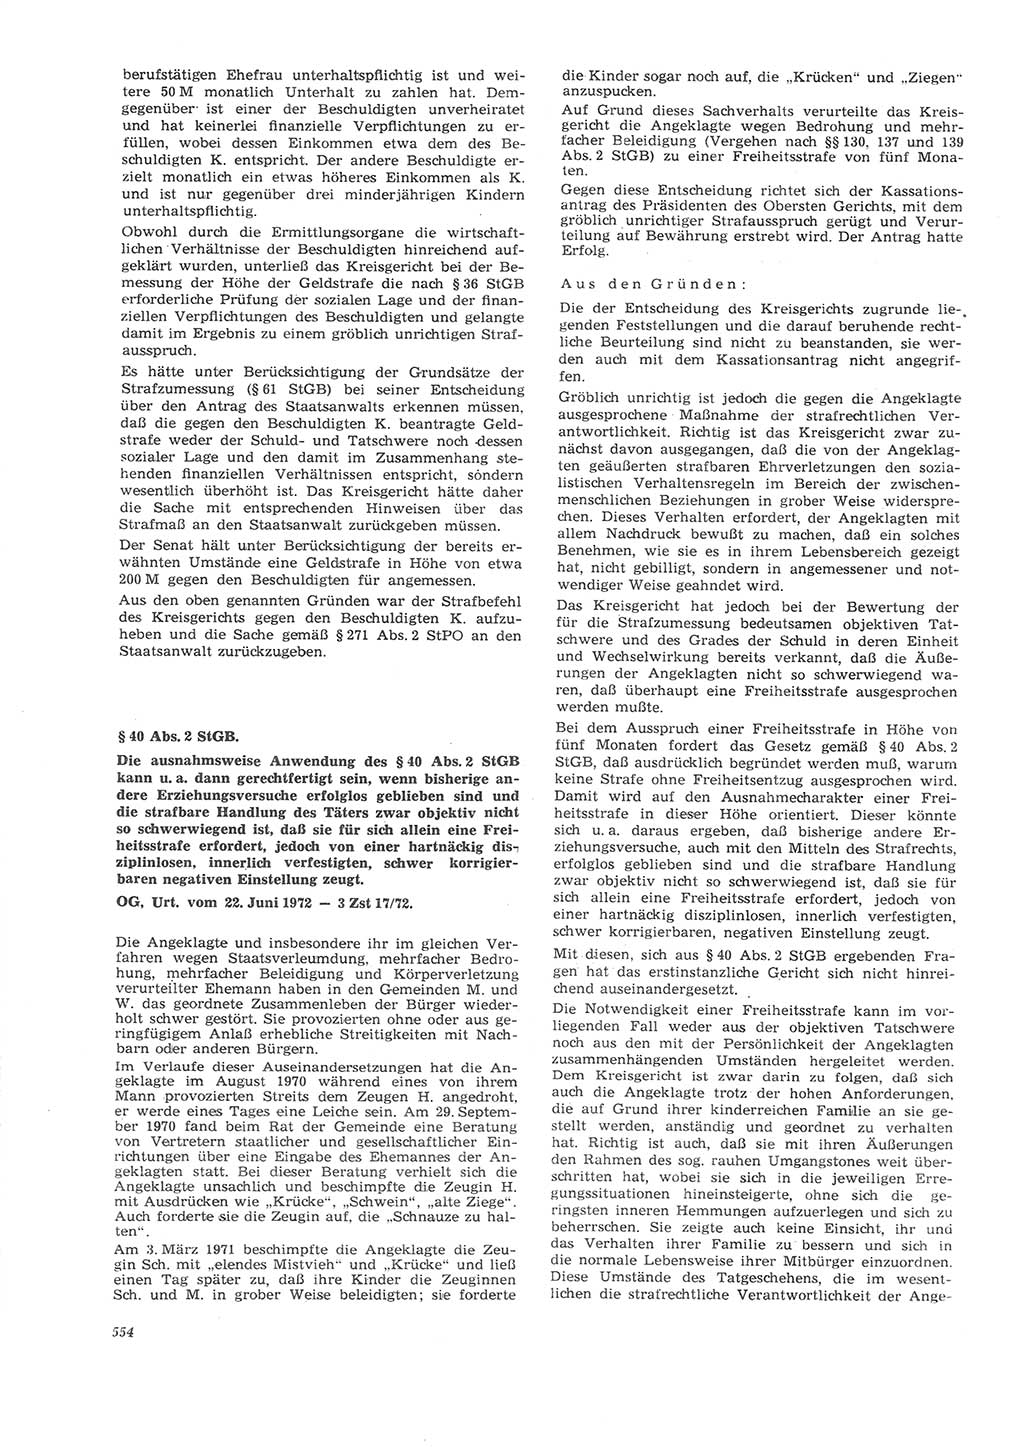 Neue Justiz (NJ), Zeitschrift für Recht und Rechtswissenschaft [Deutsche Demokratische Republik (DDR)], 26. Jahrgang 1972, Seite 554 (NJ DDR 1972, S. 554)